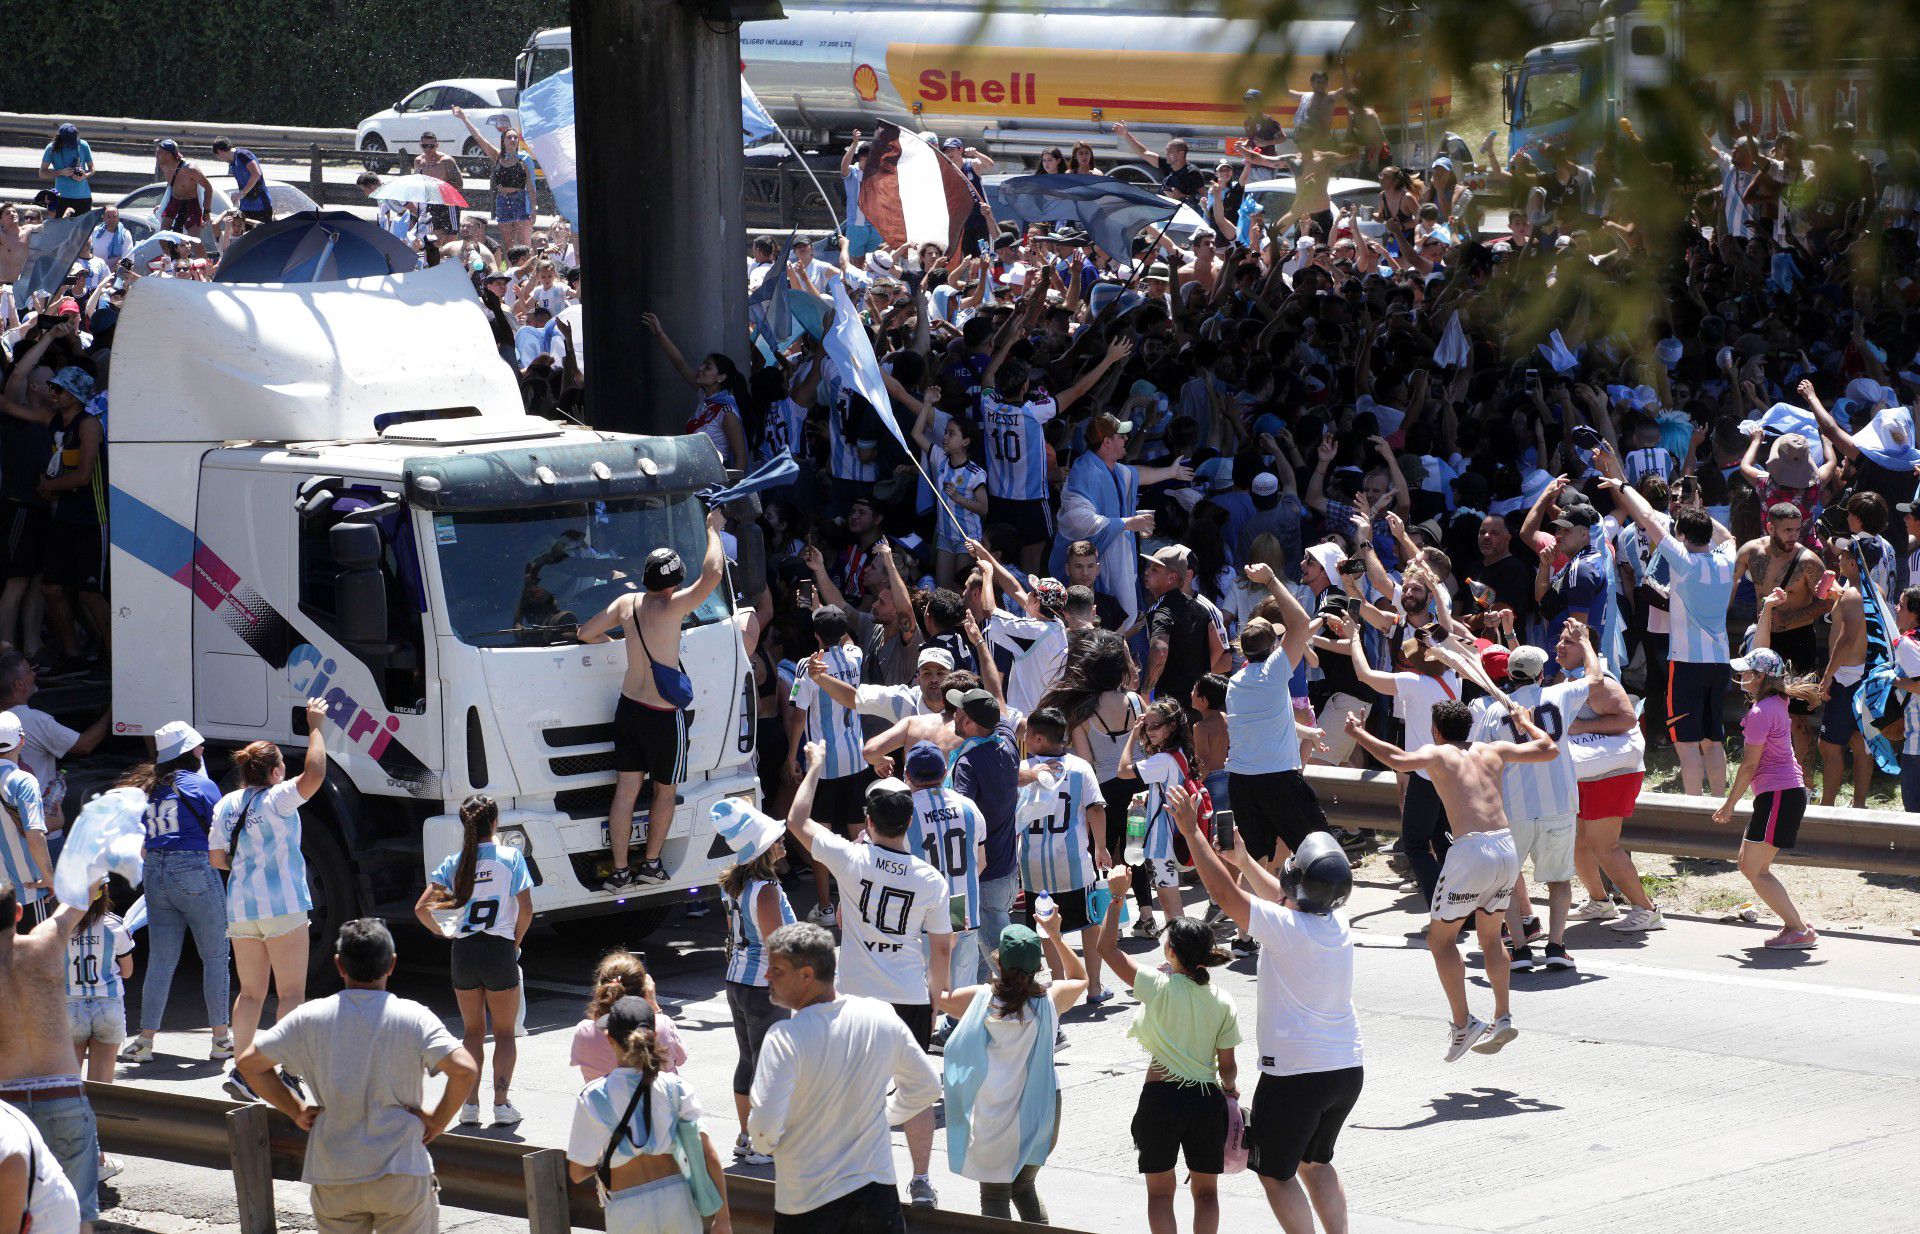 Az szurkolók próbáltak az argentin csapatot szállító buszba ugrani egy felüljáróról